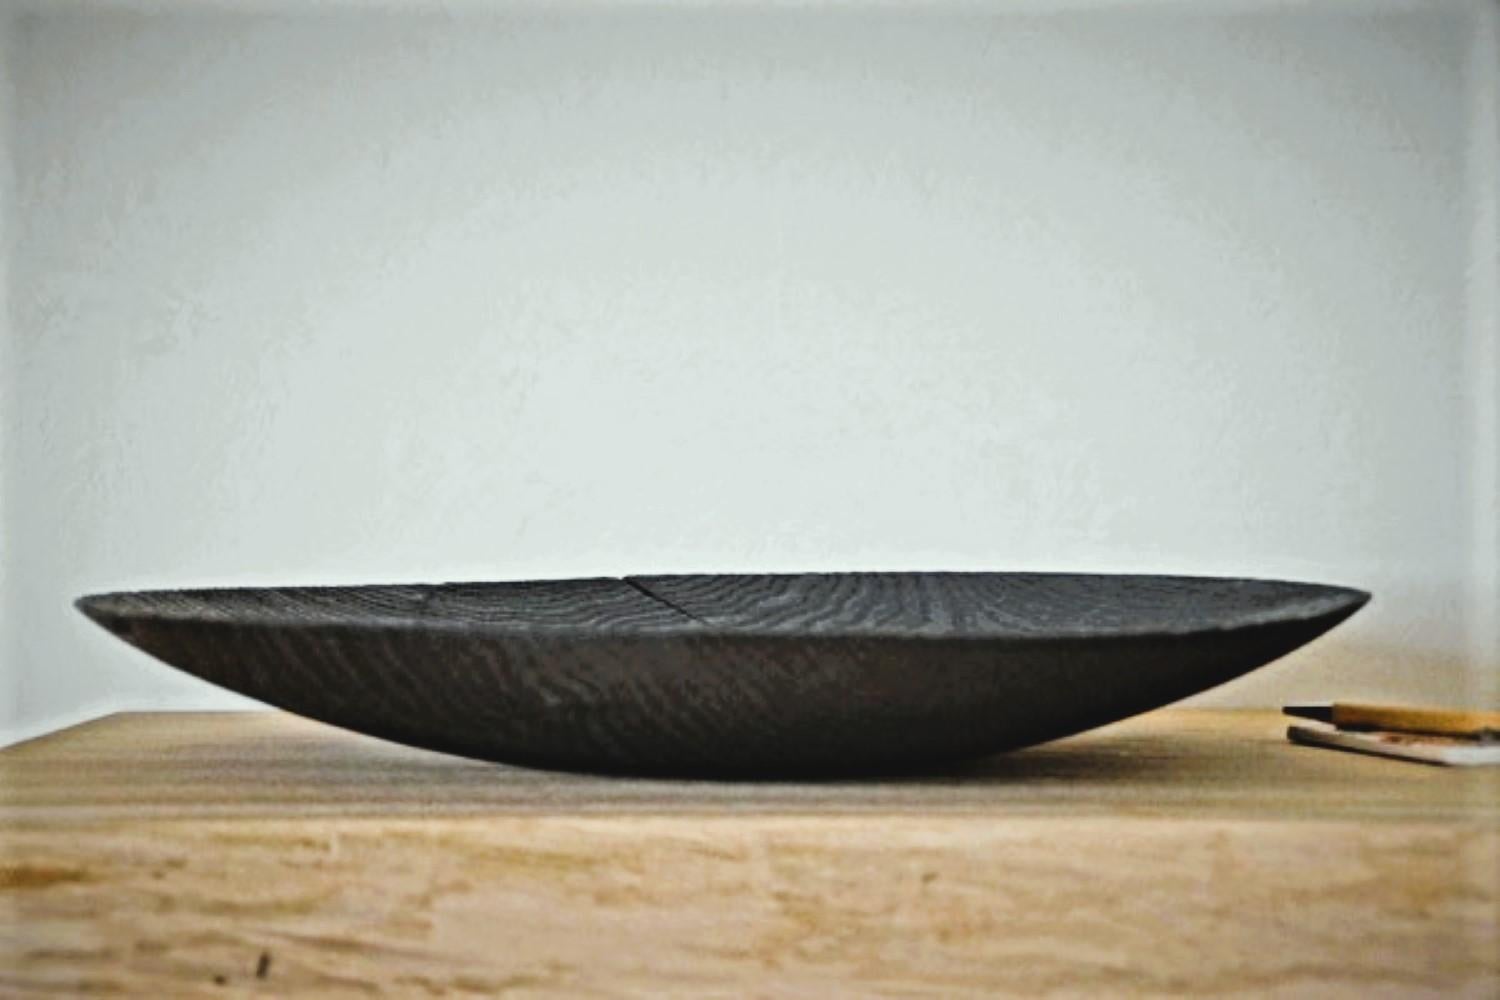 Handgefertigte, gedrechselte Yakisugi-Schale aus einem Stück Eiche. Die dekorative Schale wird in unserem Atelier in Bayern kreiert. Nach dem groben Zuschnitt wird der Holzklotz durch akribische Handarbeit zu einer einzigartigen Schale gedrechselt